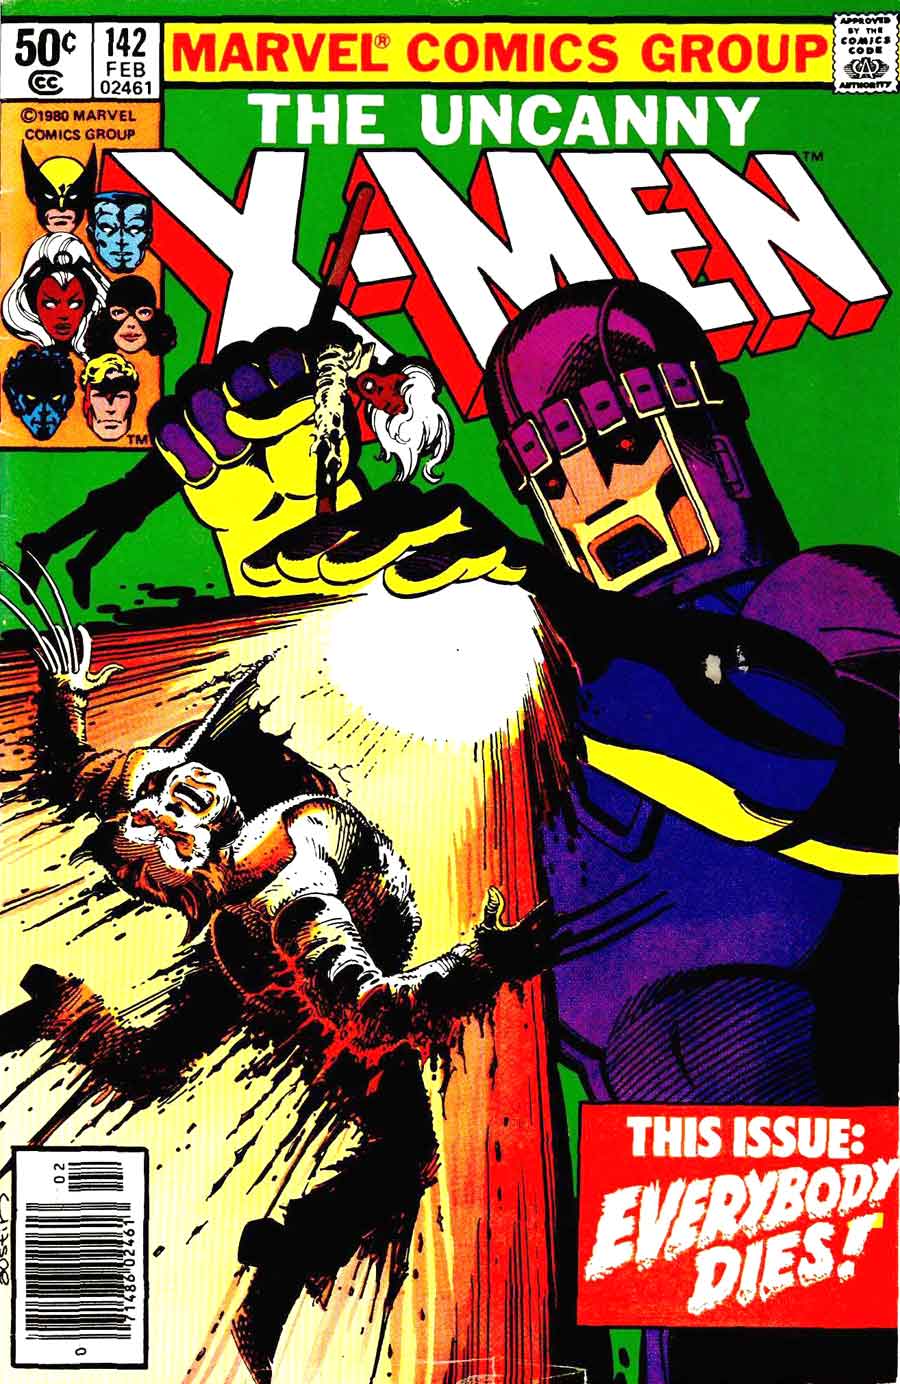 X-men v1 #142 marvel comic book cover art by John Byrne